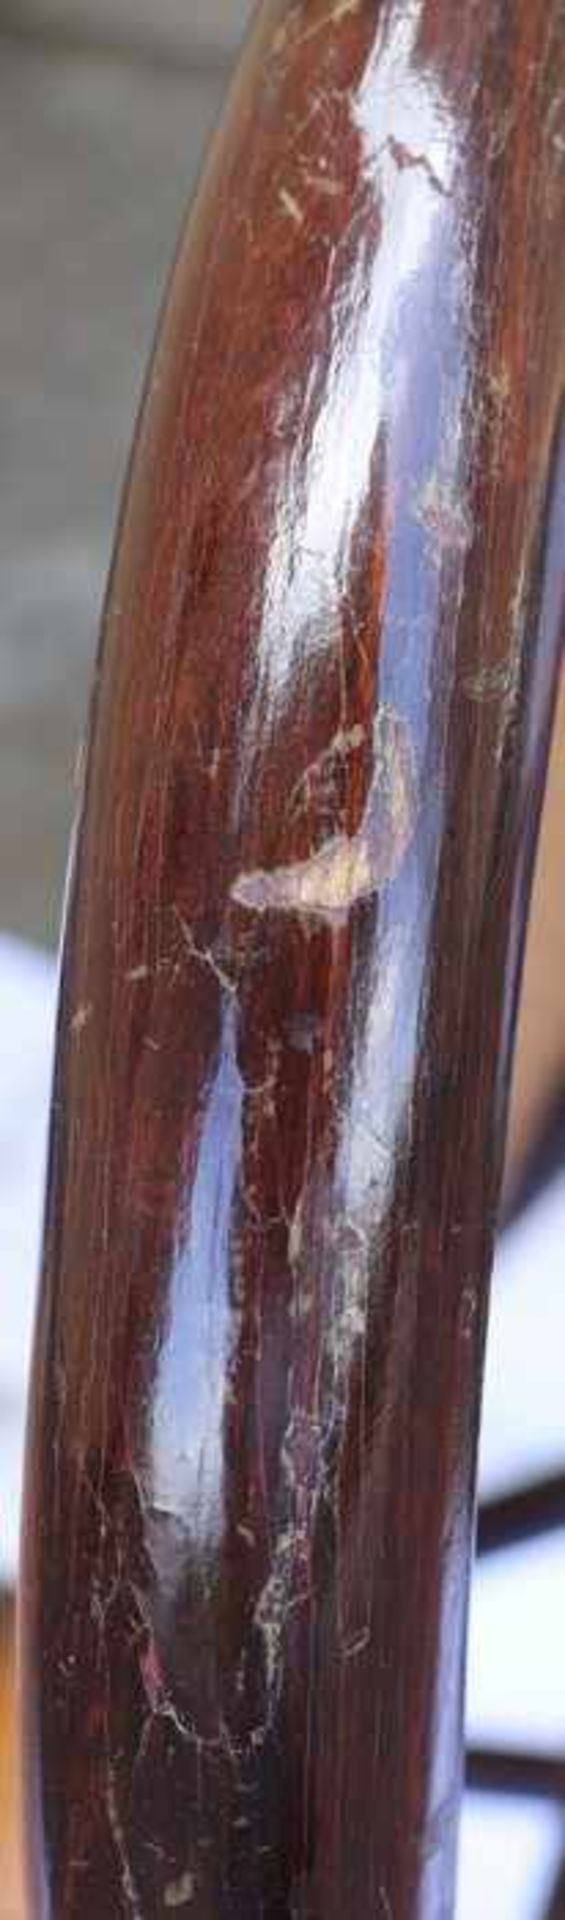 Trachtenkorb19. Jh., Franken, Weide mit Lederapplikationen, tlw. eingefärbt, halbrunde Form mit - Bild 9 aus 18